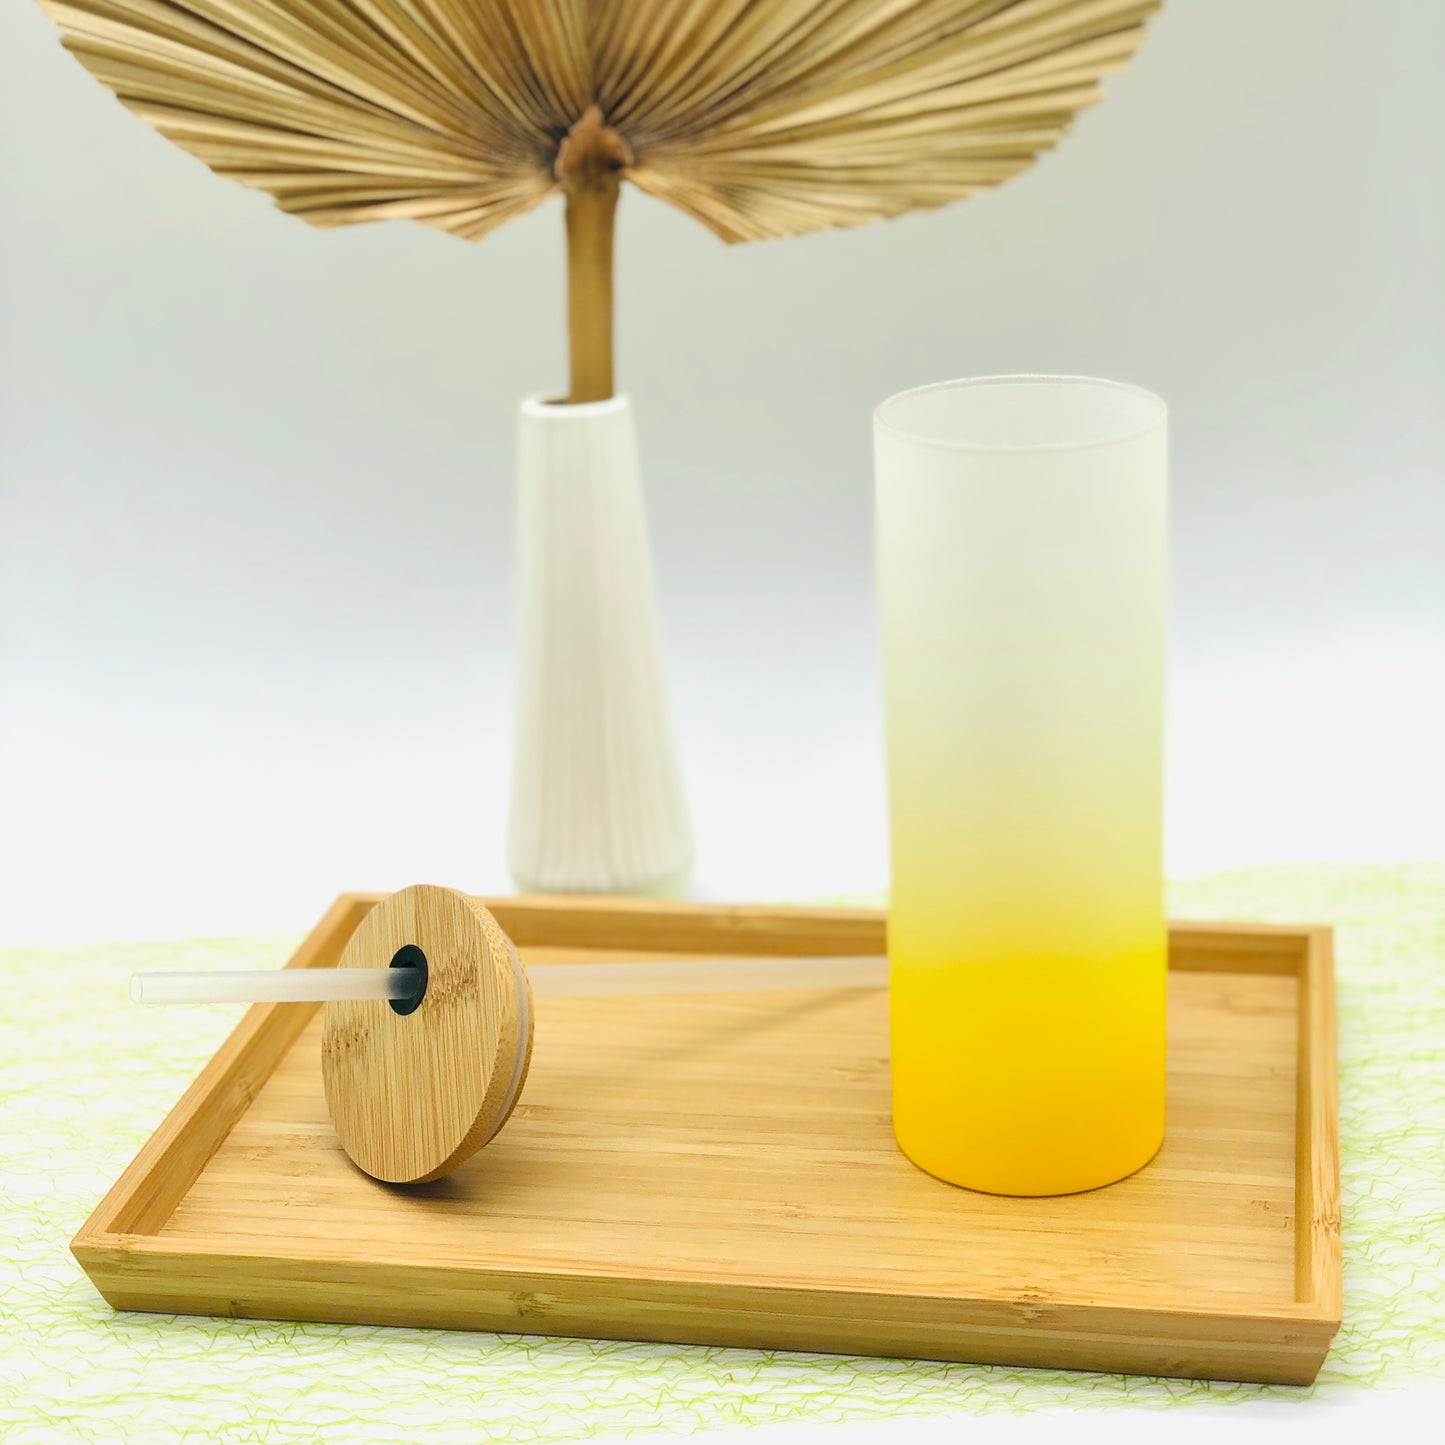 Tumbler für den Herbst & Halloween - Trinkglas frosted in 4 Farben - Cocktailglas mit Bambusdeckel und Strohhalm - Geschenkidee Herbst